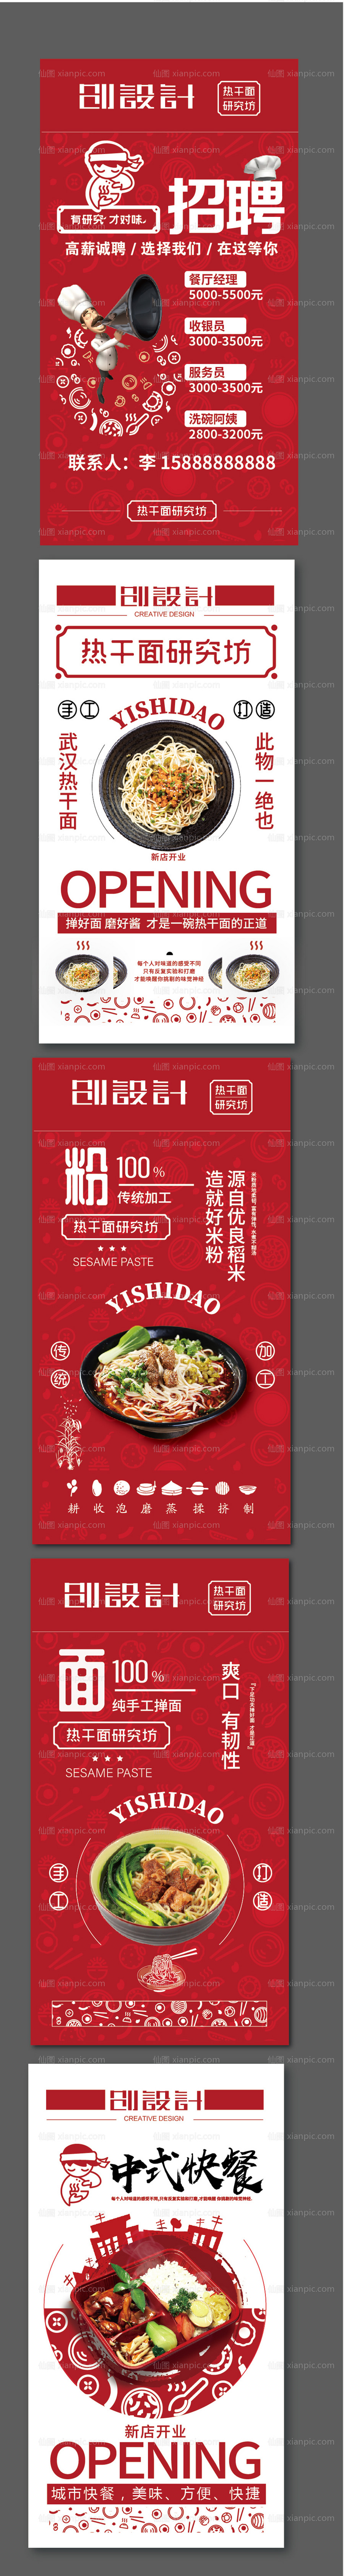 素材乐-红色中式快餐店系列海报